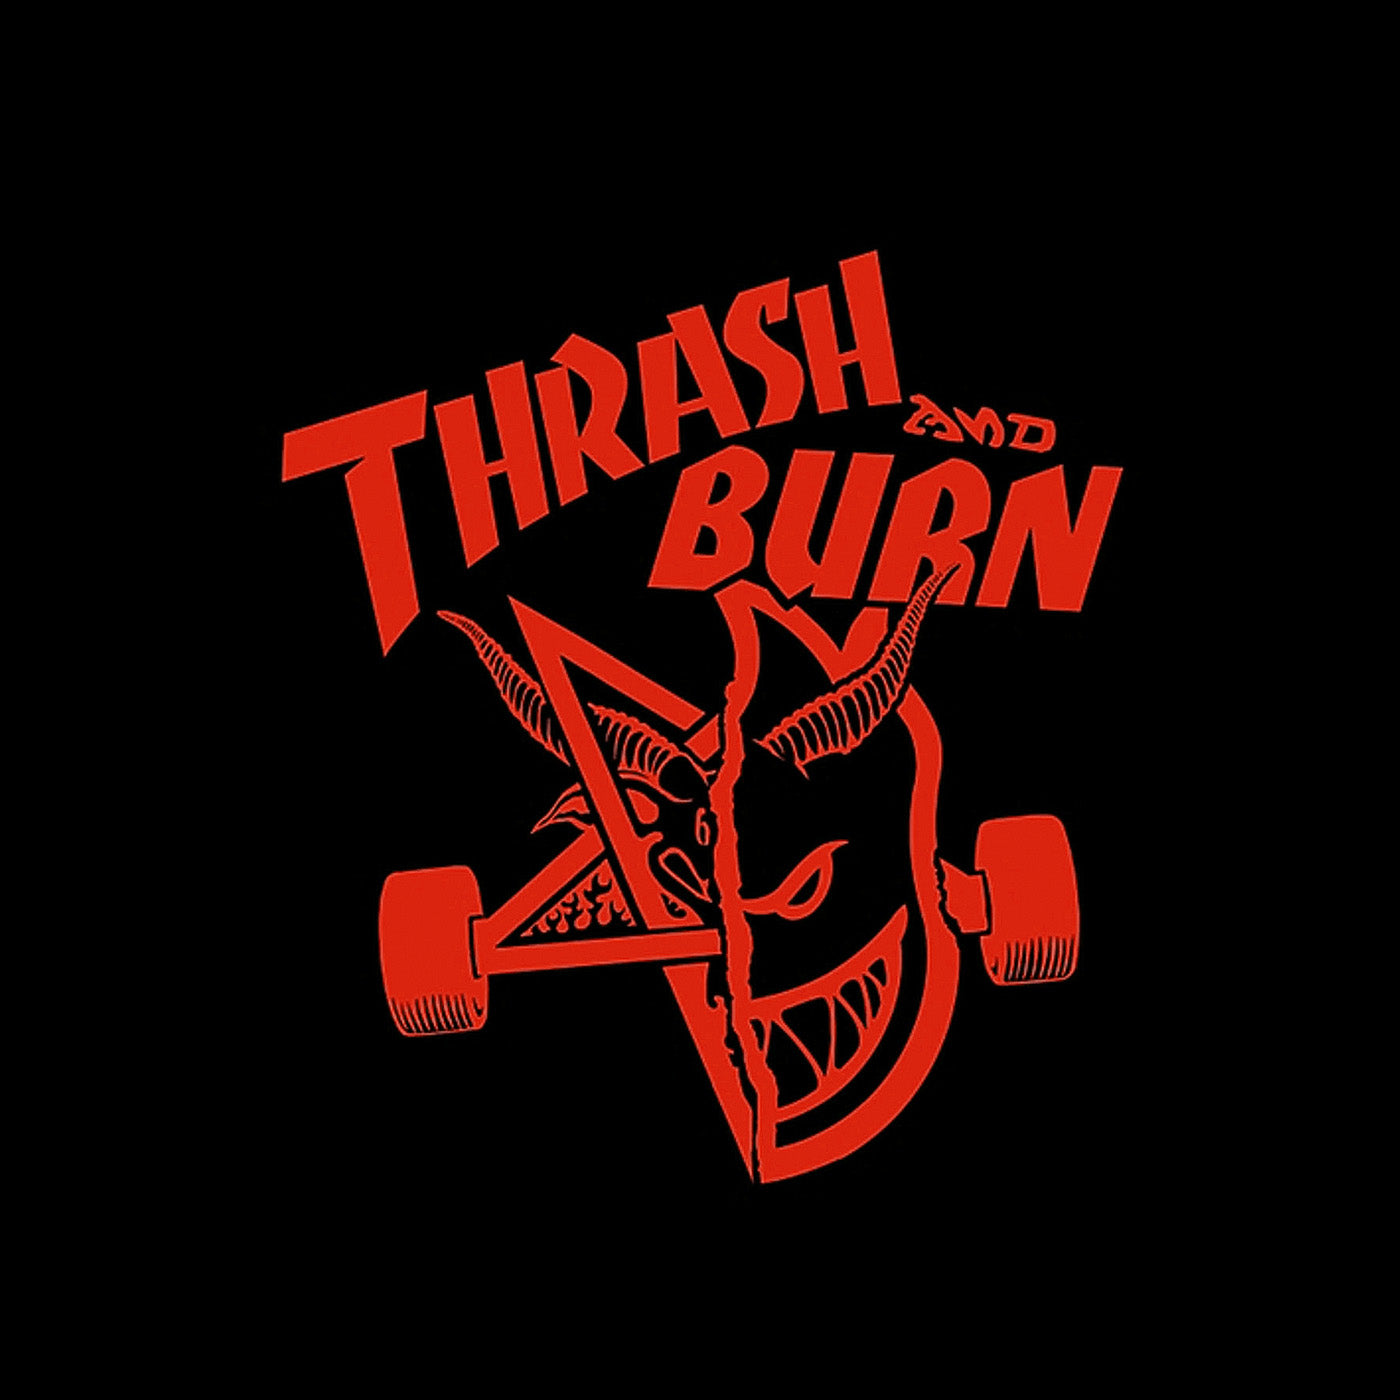 Thrasher - "Thrash and Burn" Stuttgart